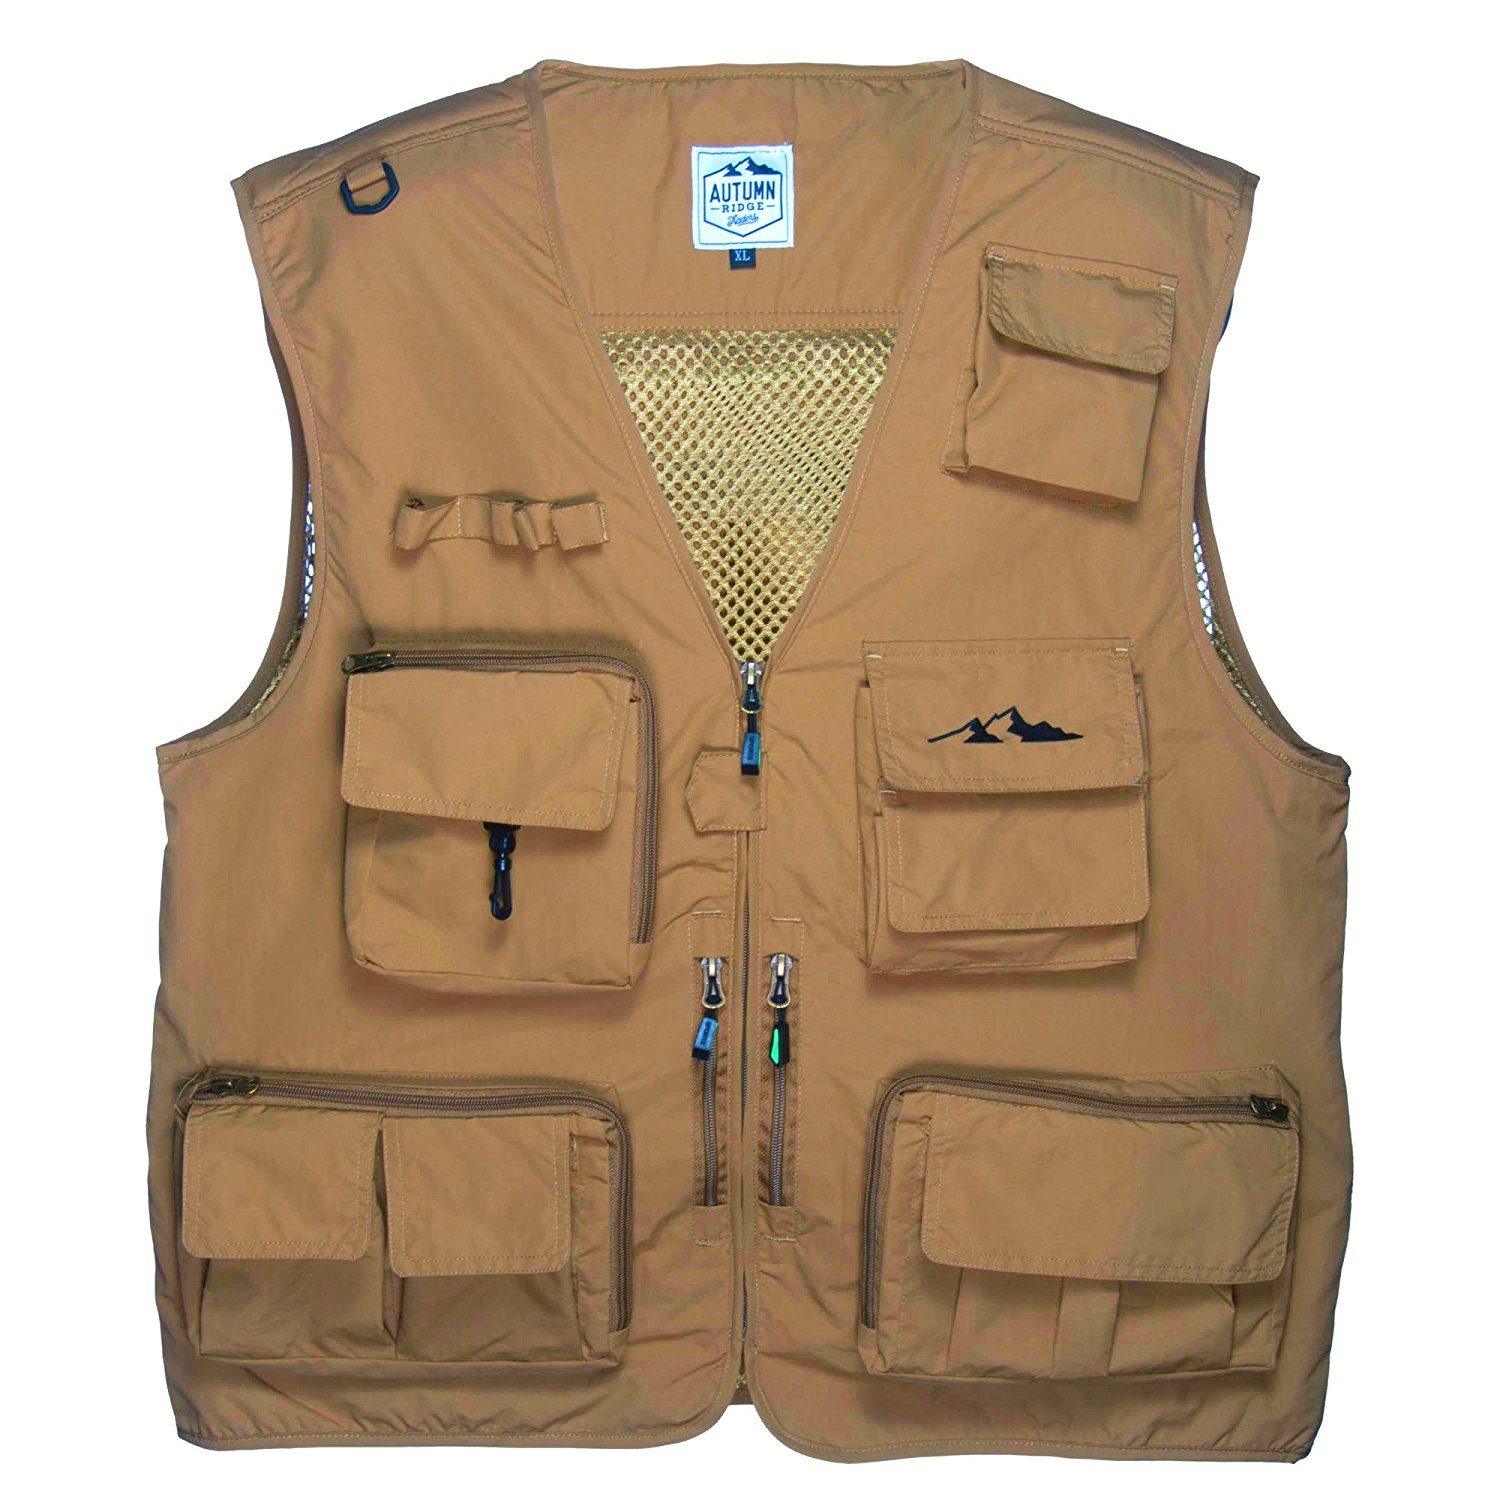 Danielson Classic Utility Fly Fishing Vest #6705 Size XXL 19 Pocket 